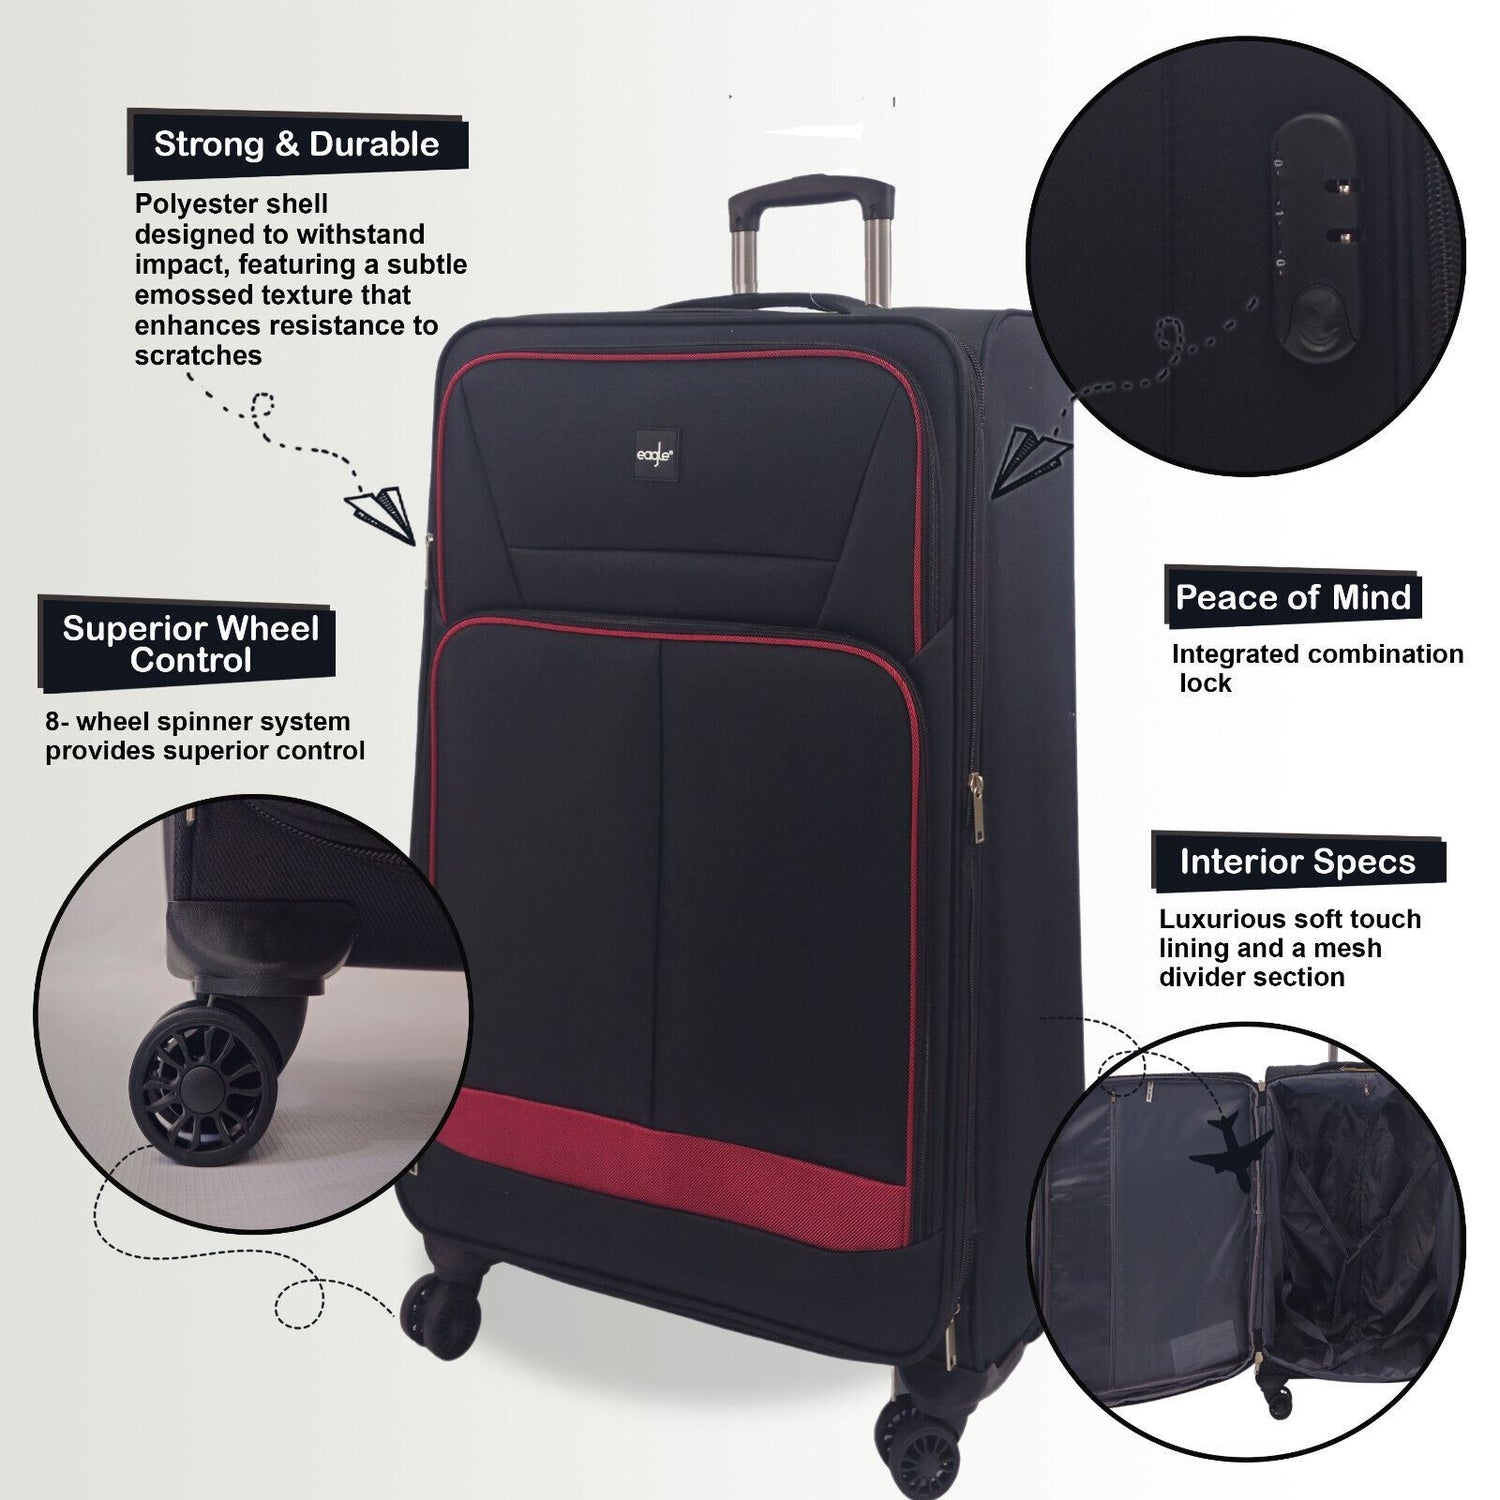 Ashford Medium Soft Shell Suitcase in Black